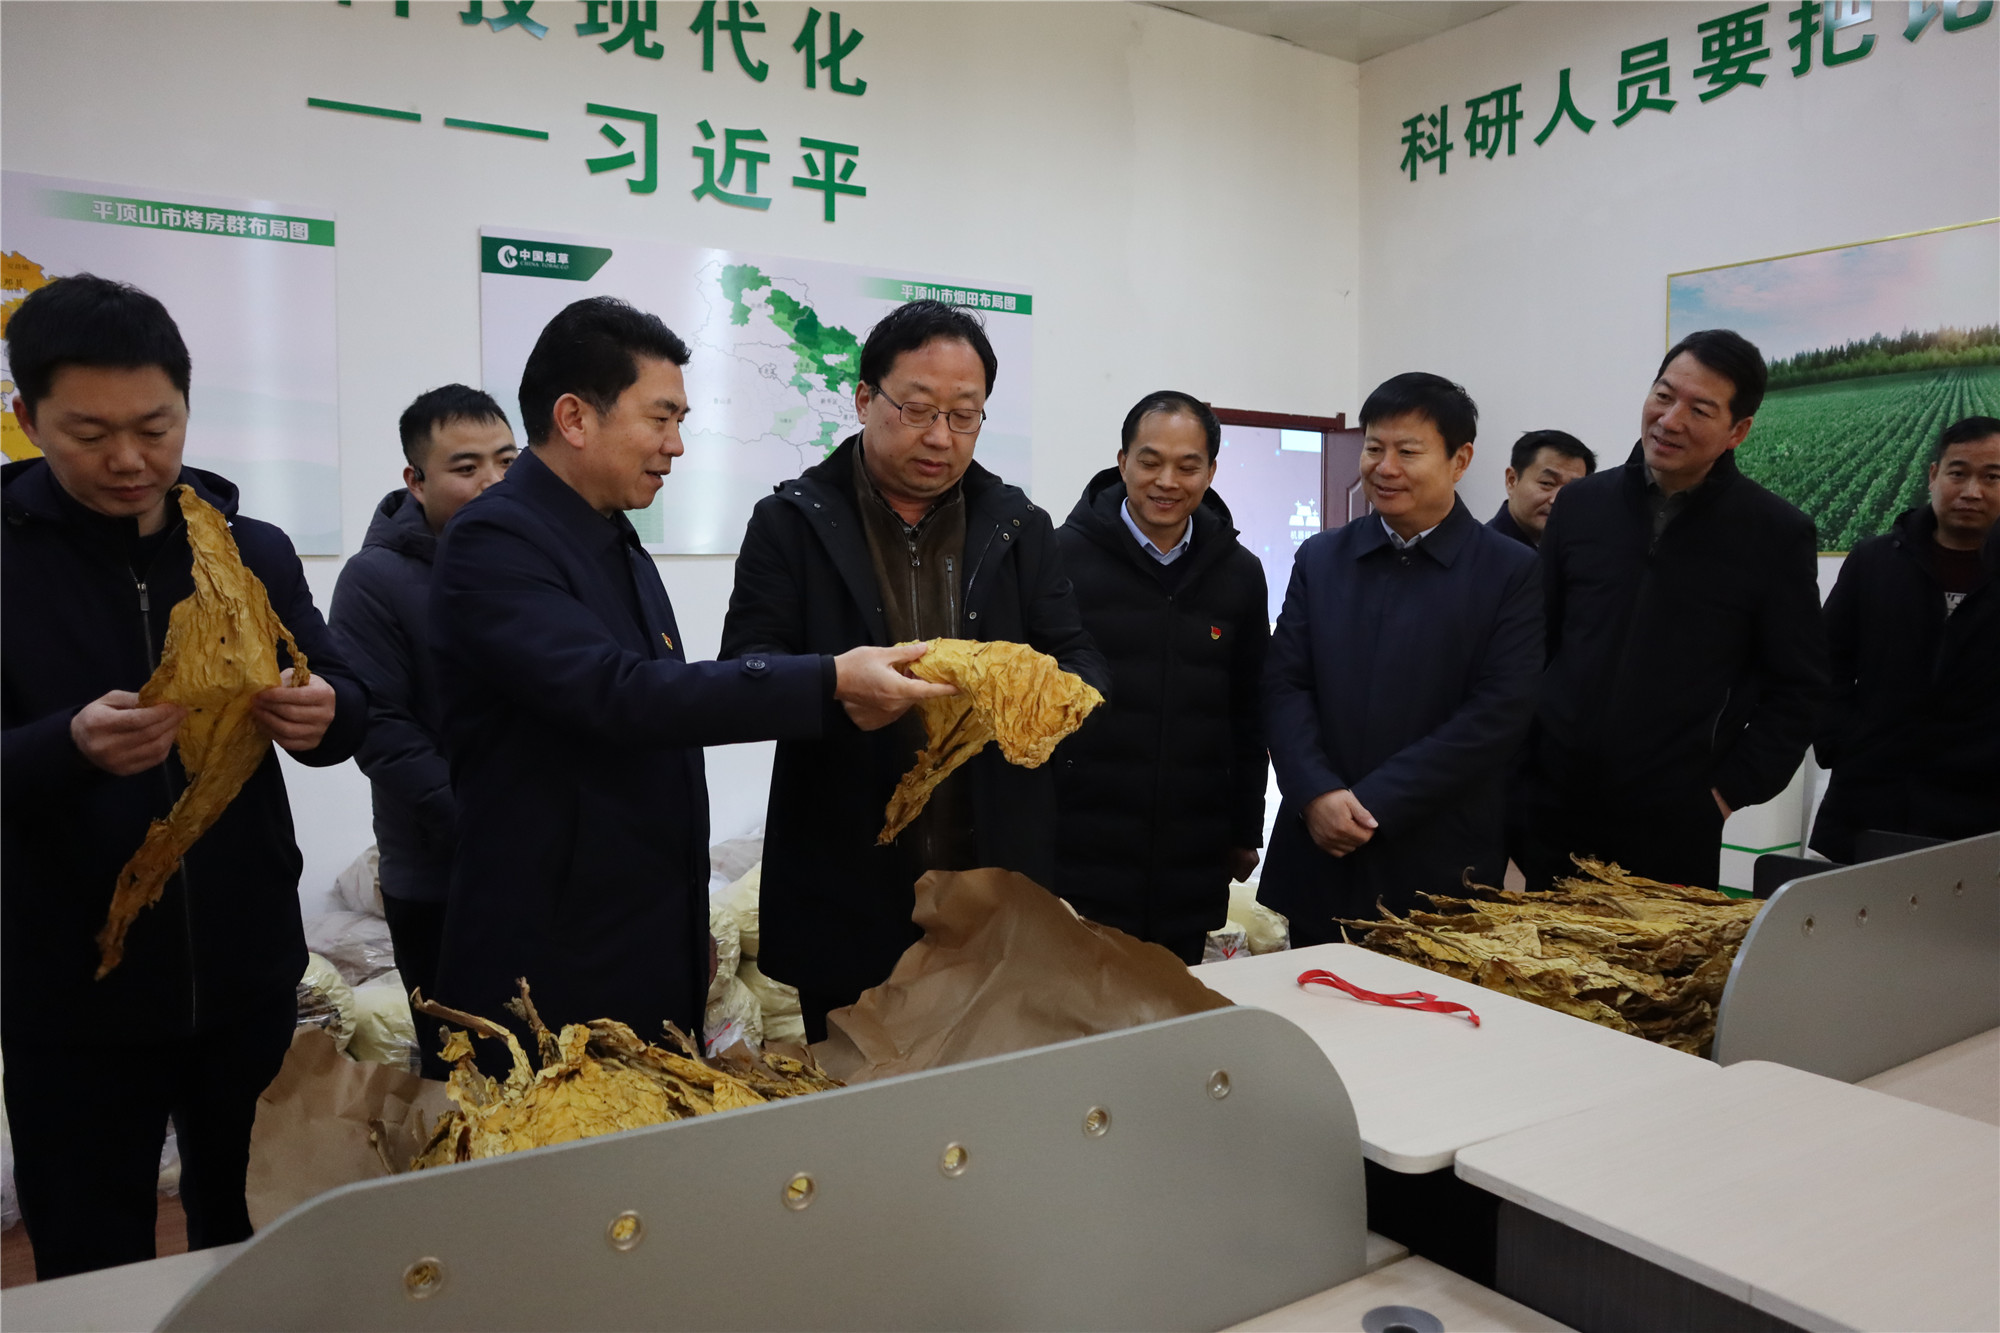 12月30日副市长王永记到我县调研红牛及烟叶产业发展情况.3_副本.jpg